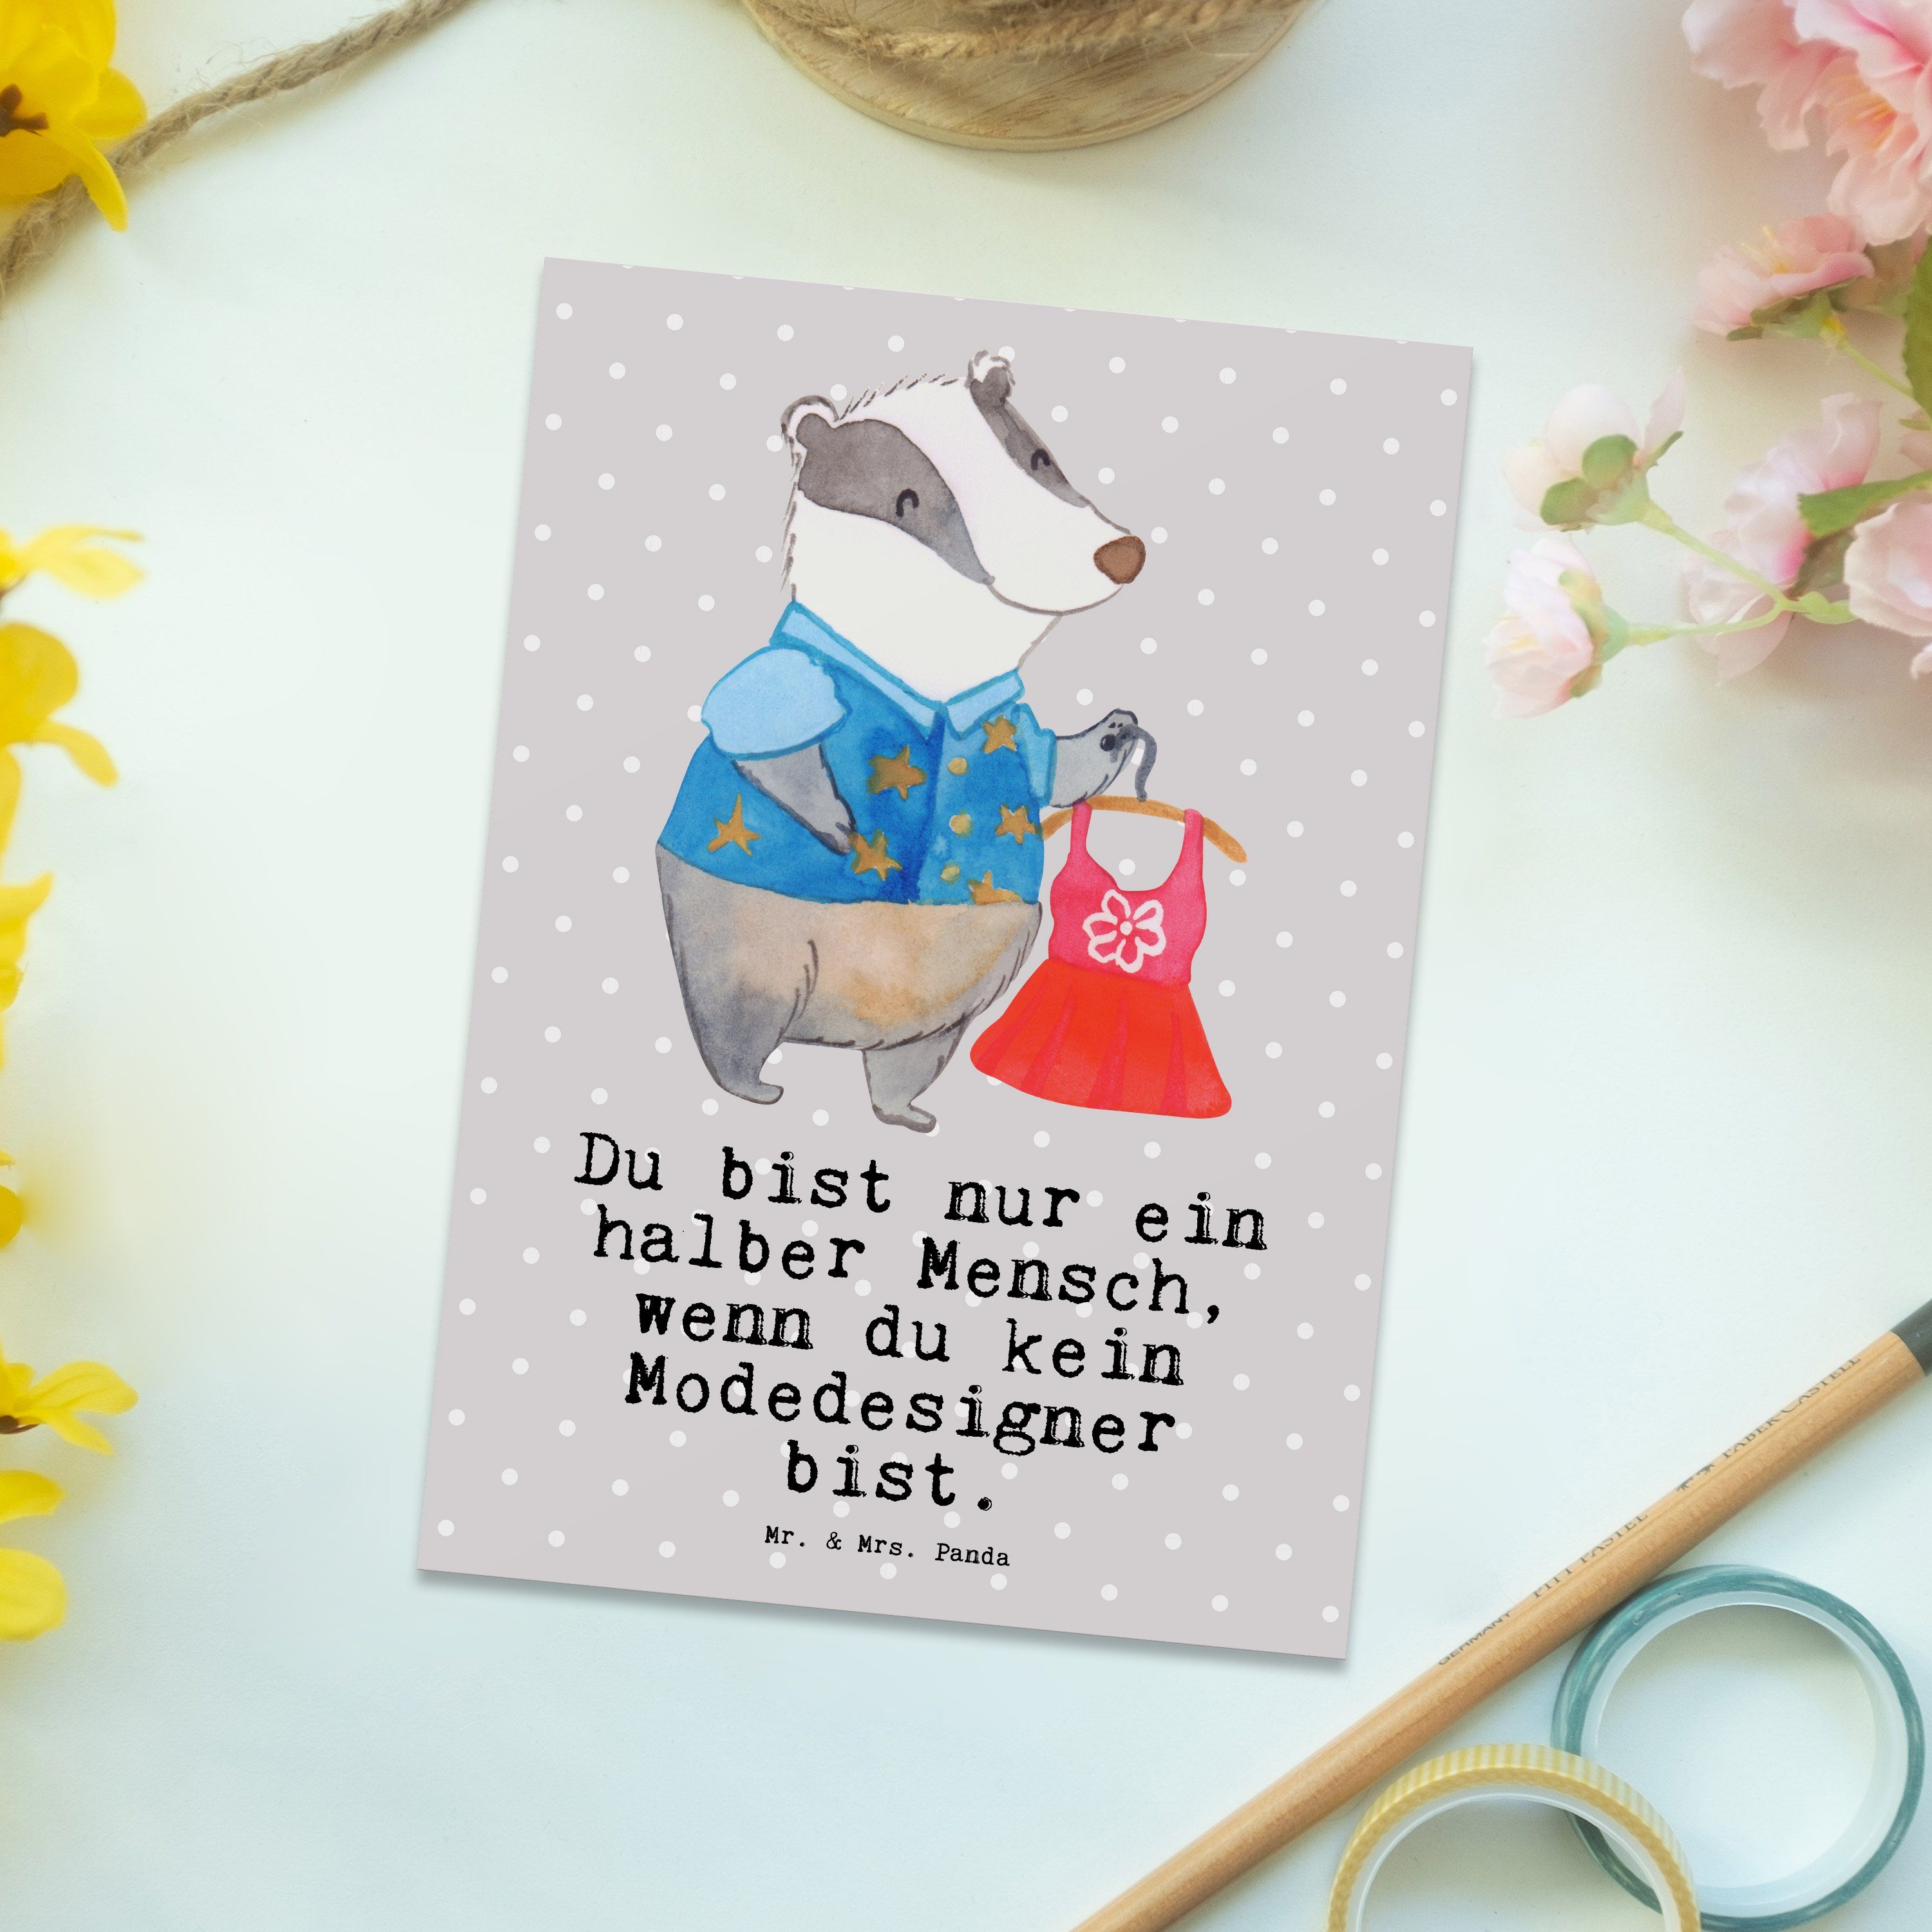 Mr. & Mrs. Panda Postkarte Modedesigner mit Herz - Grau Pastell - Geschenk, Modeschöpfer, Fashio